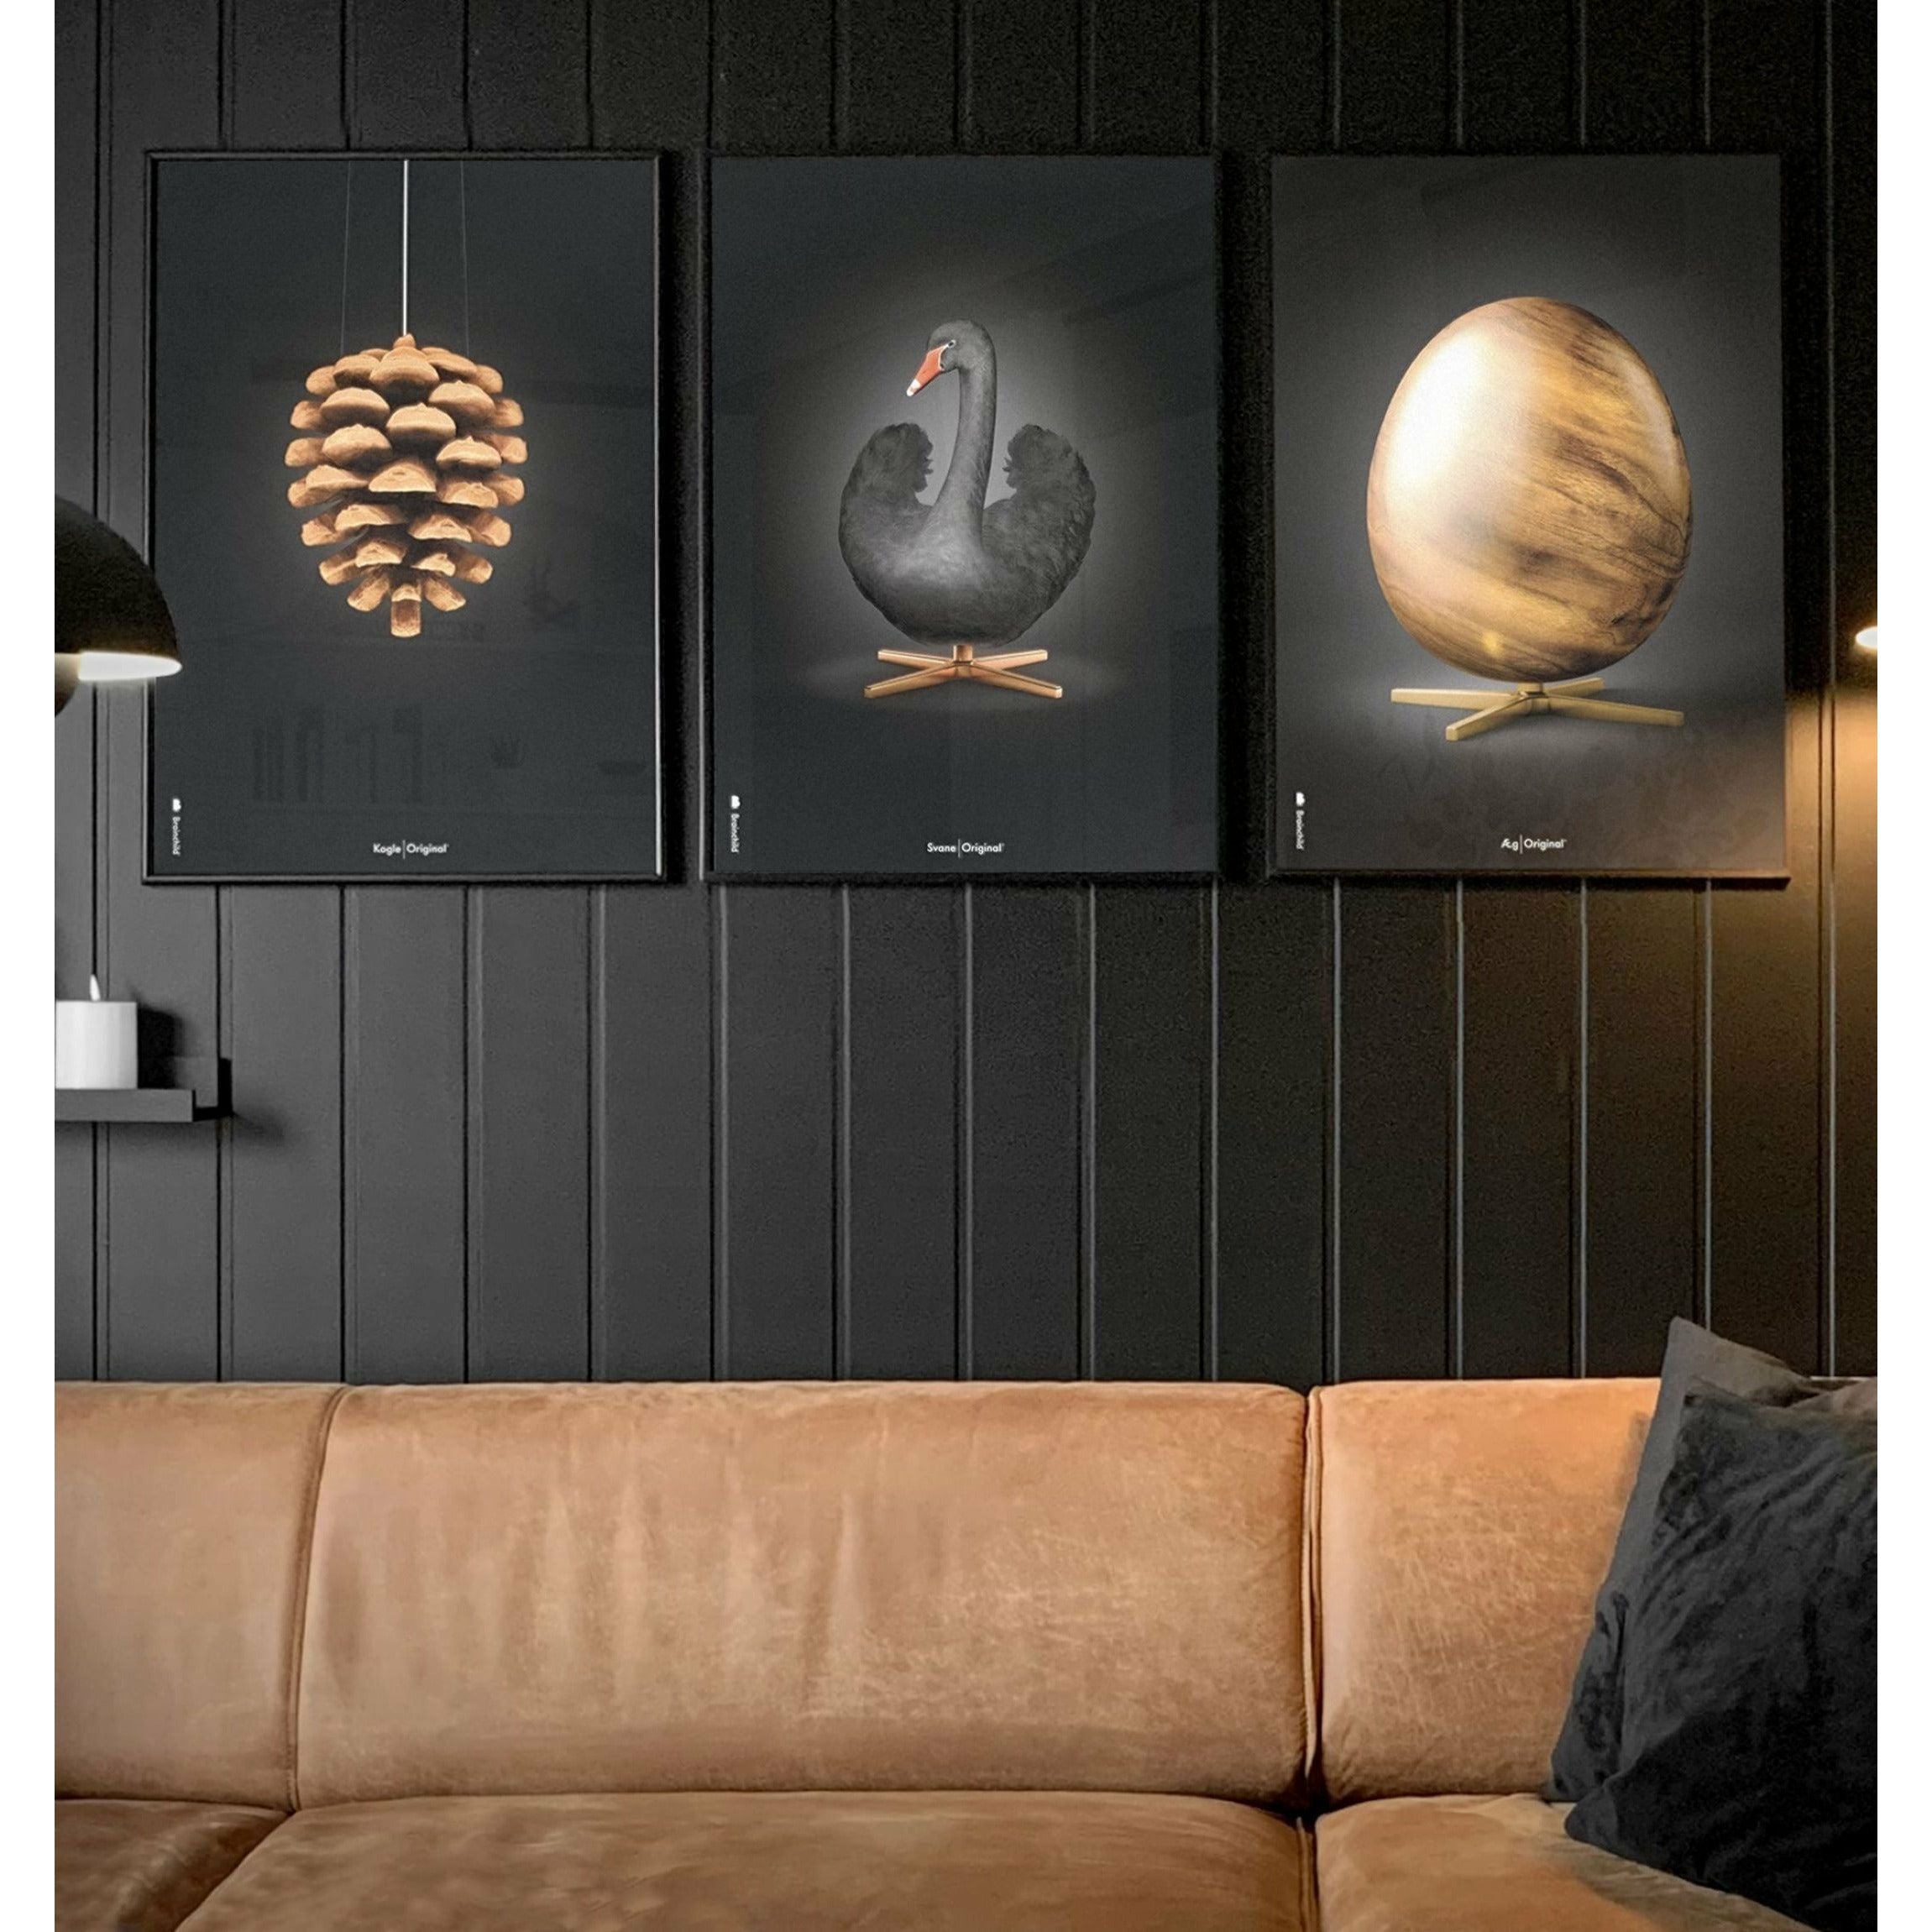 Brainchild Pine Cone Classic Poster, Messingrahmen 70 x100 cm, schwarzer Hintergrund